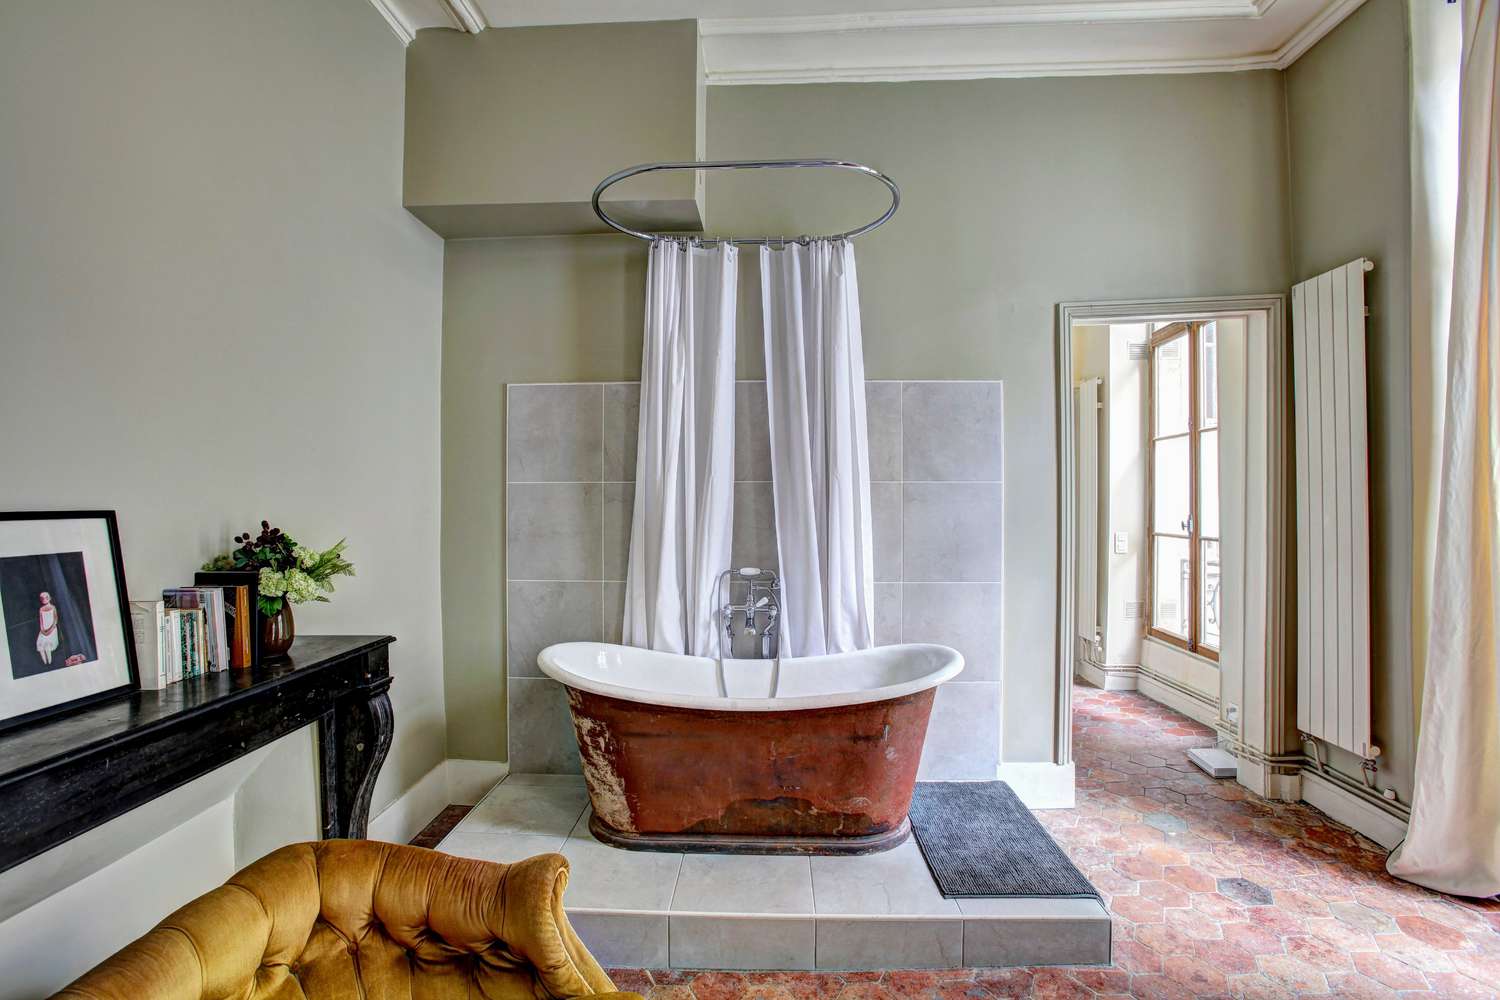 Banheira de cobre em sala de estilo campestre francês